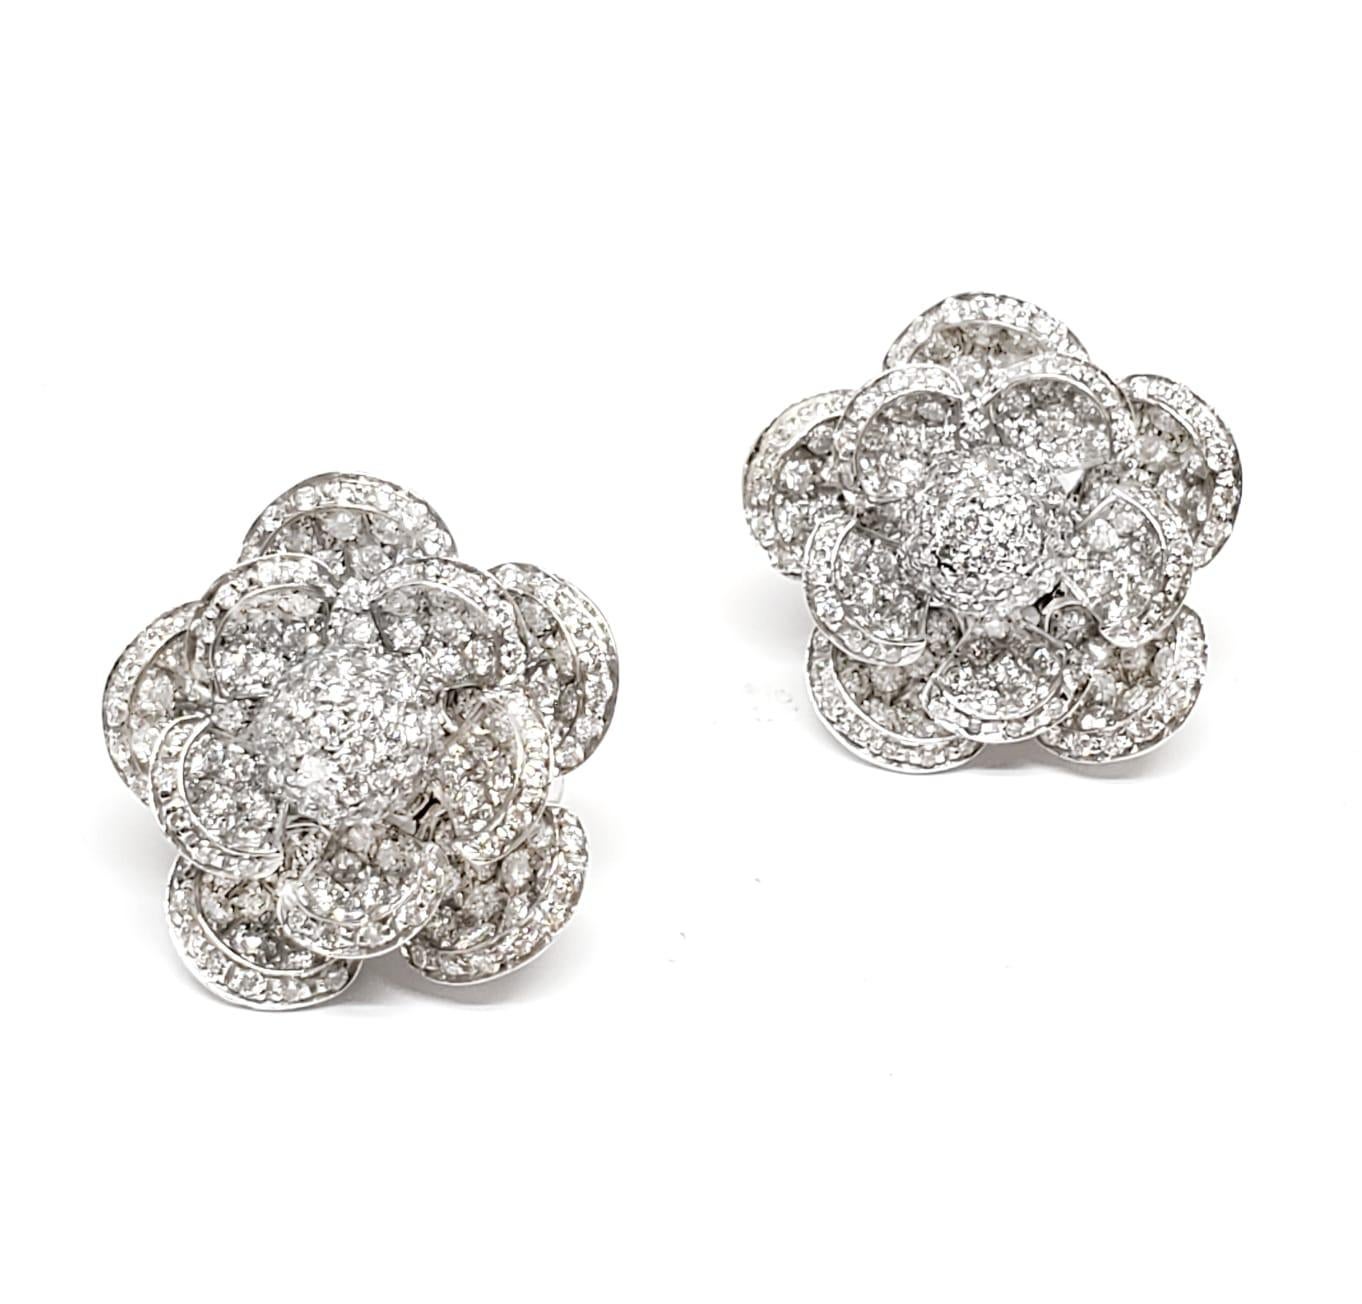 Contemporary Andreoli 4.99 Carat Diamond 18 Karat White Gold Flower Earrings For Sale